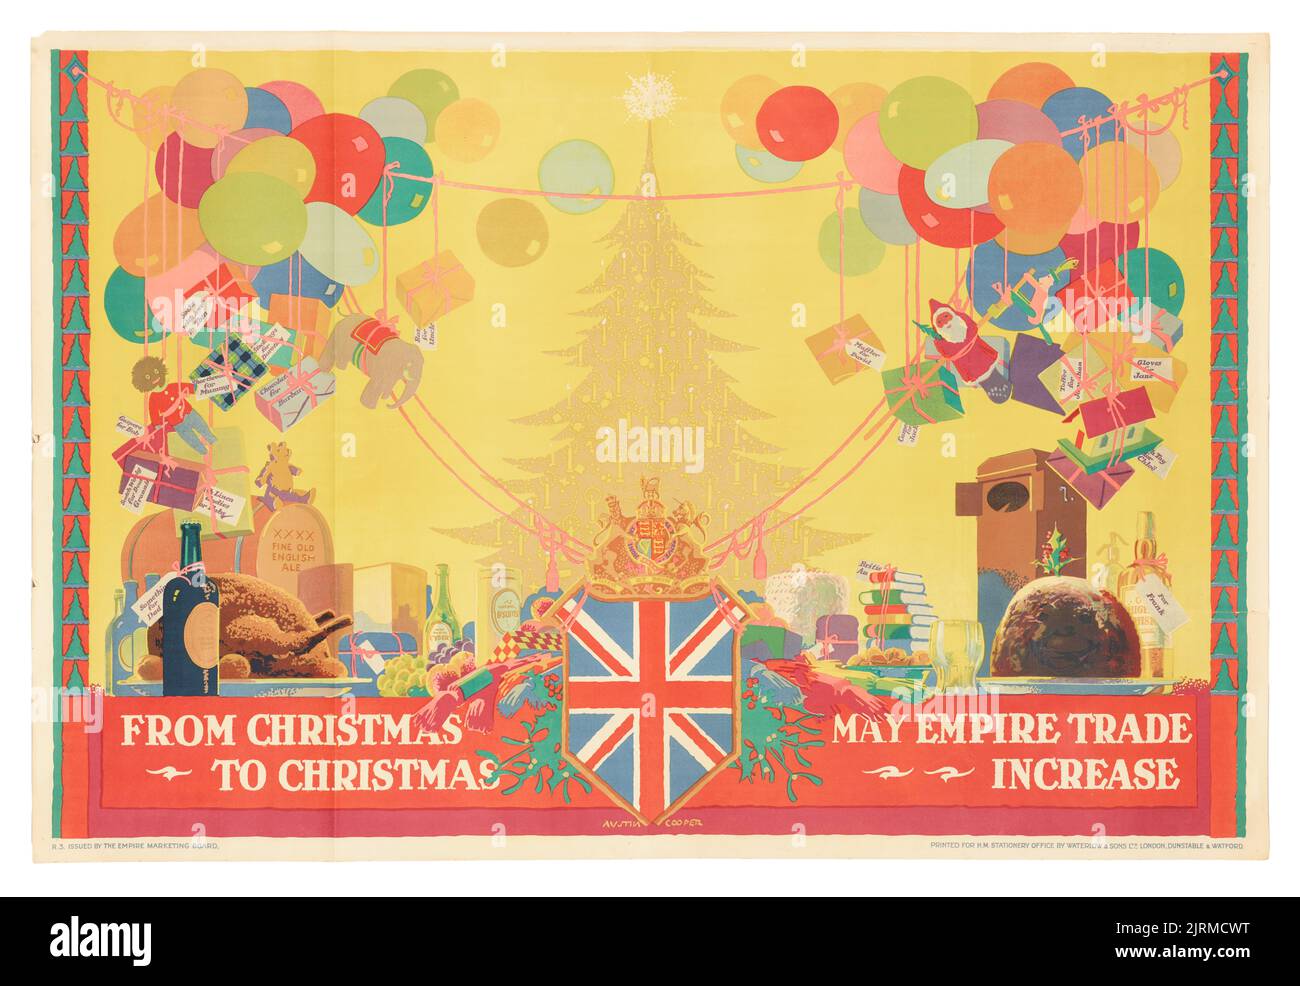 Poster, 'da Natale a Natale maggio Empire Trade Increase', 1927, Regno Unito, di Austin Cooper, Waterlow & Sons Ltd., H.M. Stationery Office, Empire Marketing Board. Trovato nella collezione, 2012. Foto Stock